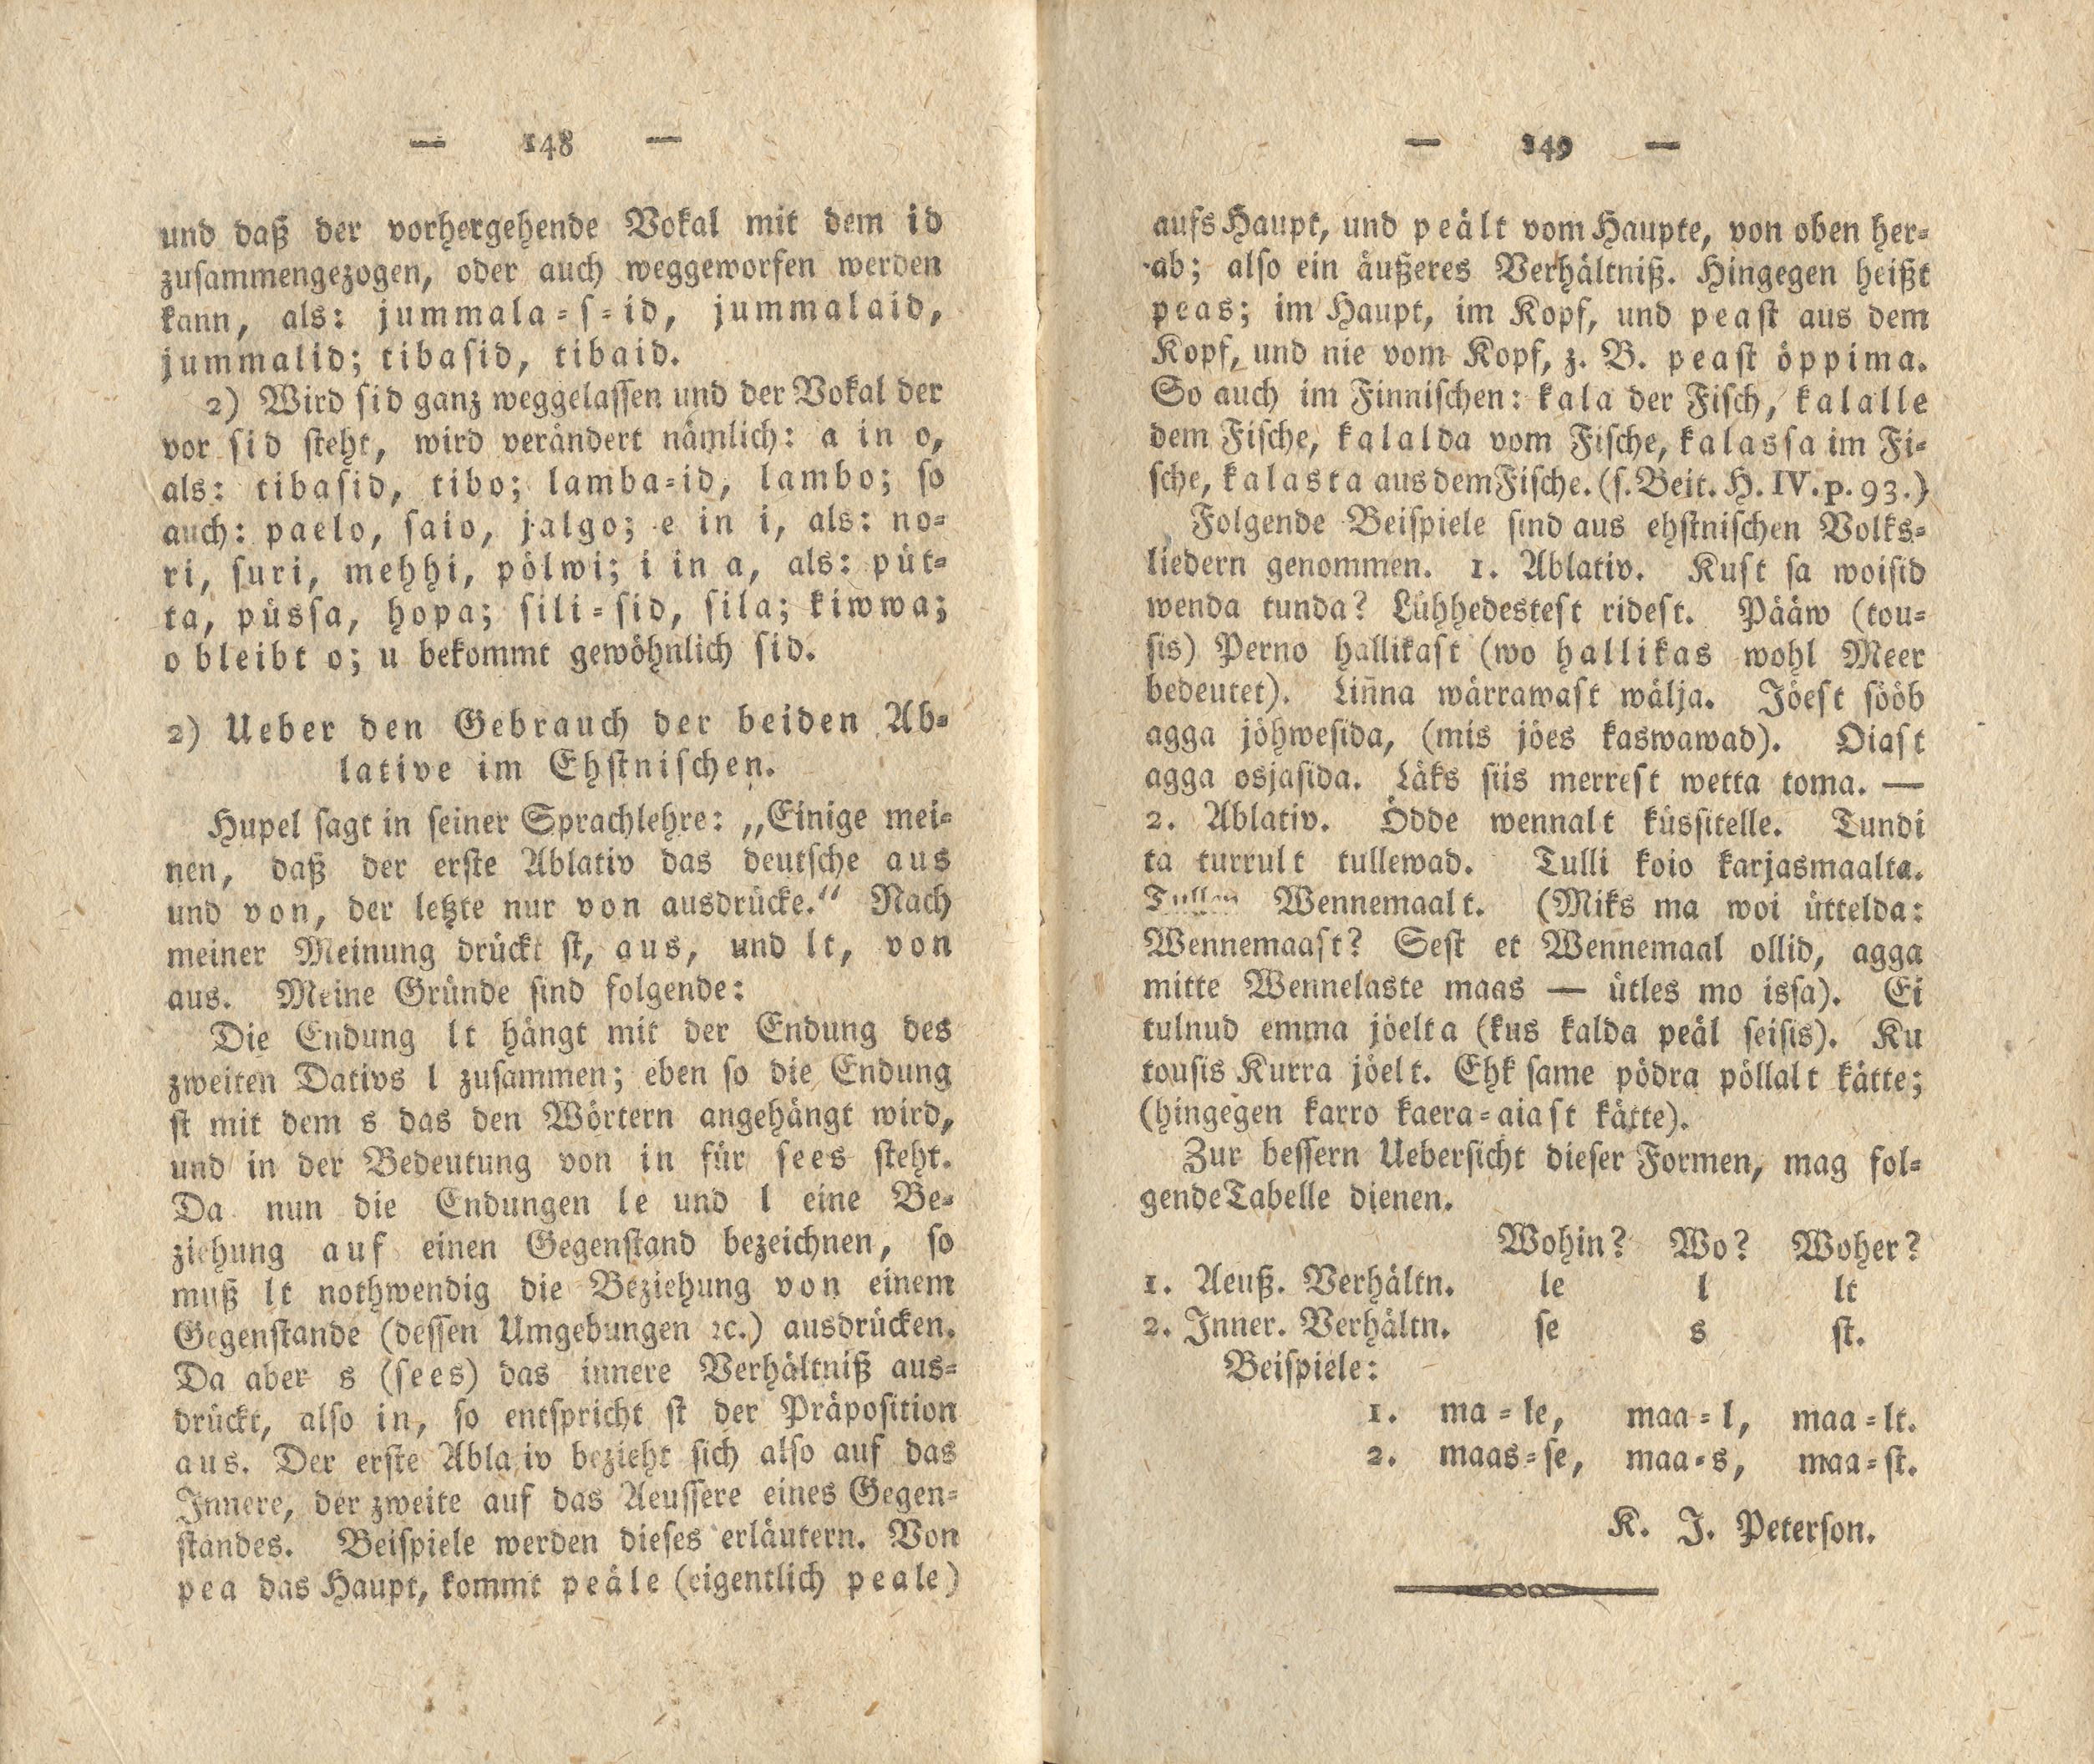 Ueber den Gebrauch der beiden Ablative im Ehstnischen (1818) | 1. (148-149) Main body of text